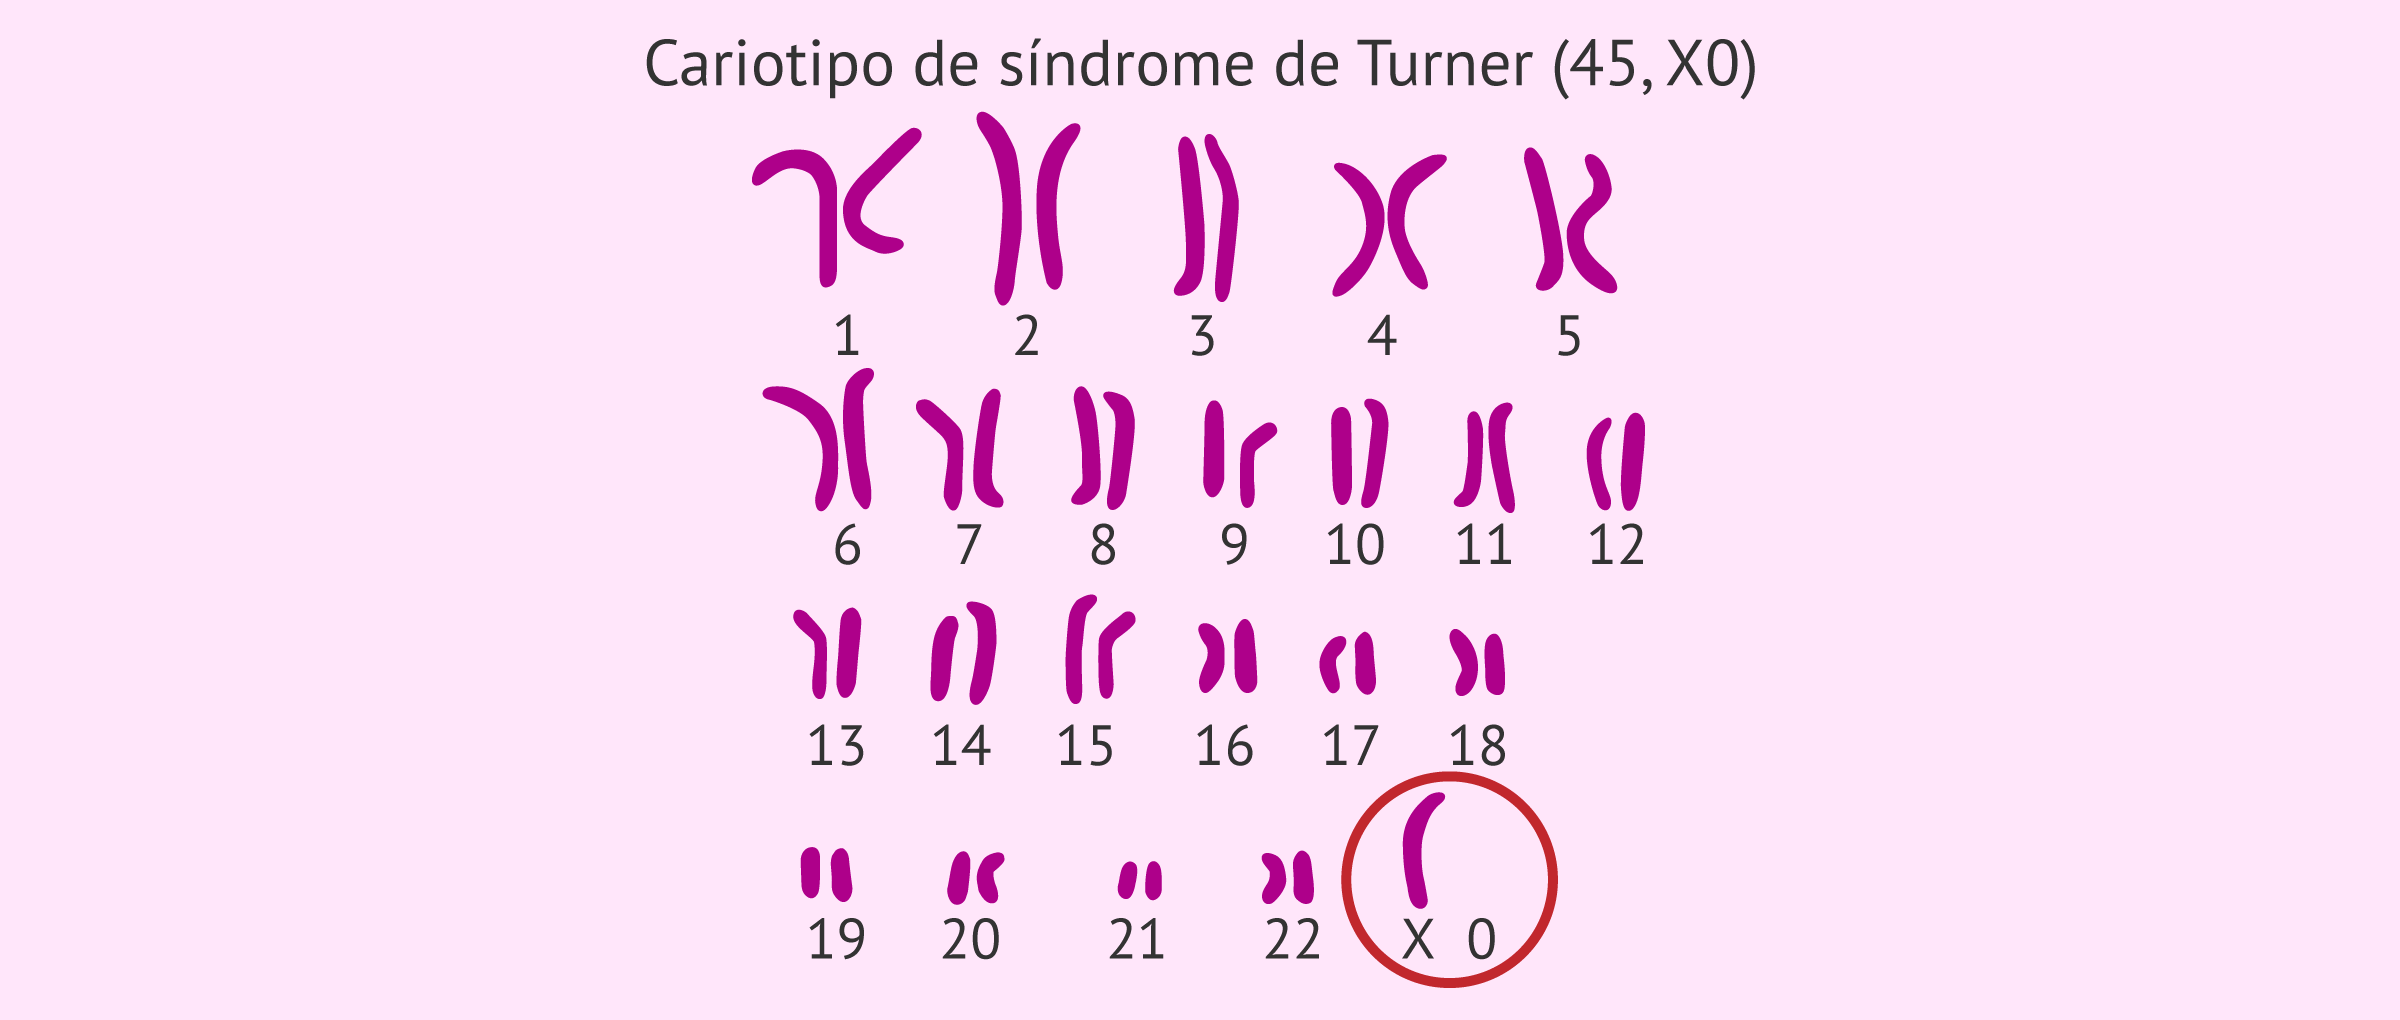 Cariotipo de paciente con síndrome de Turner (45, X0)